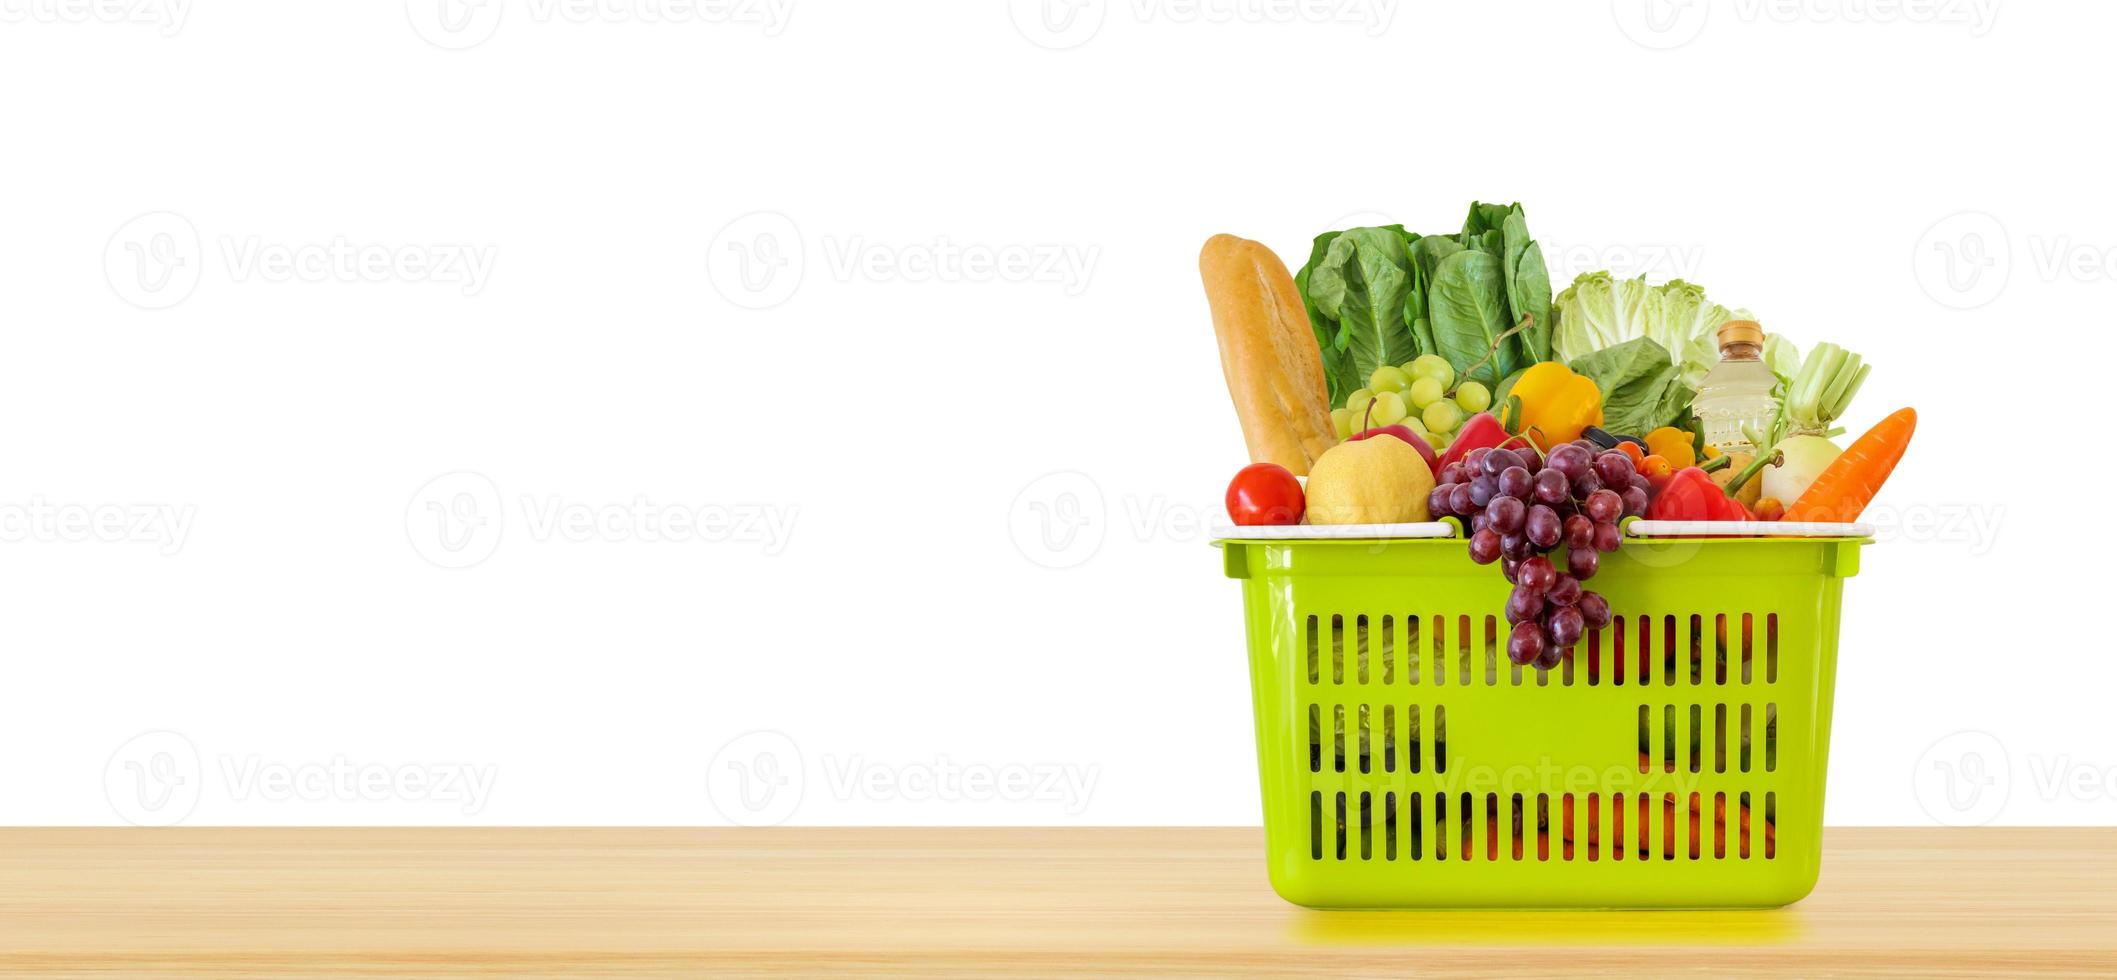 produto de mercearia de frutas e legumes frescas na cesta de compras verde no tampo da mesa de madeira isolado no fundo branco foto